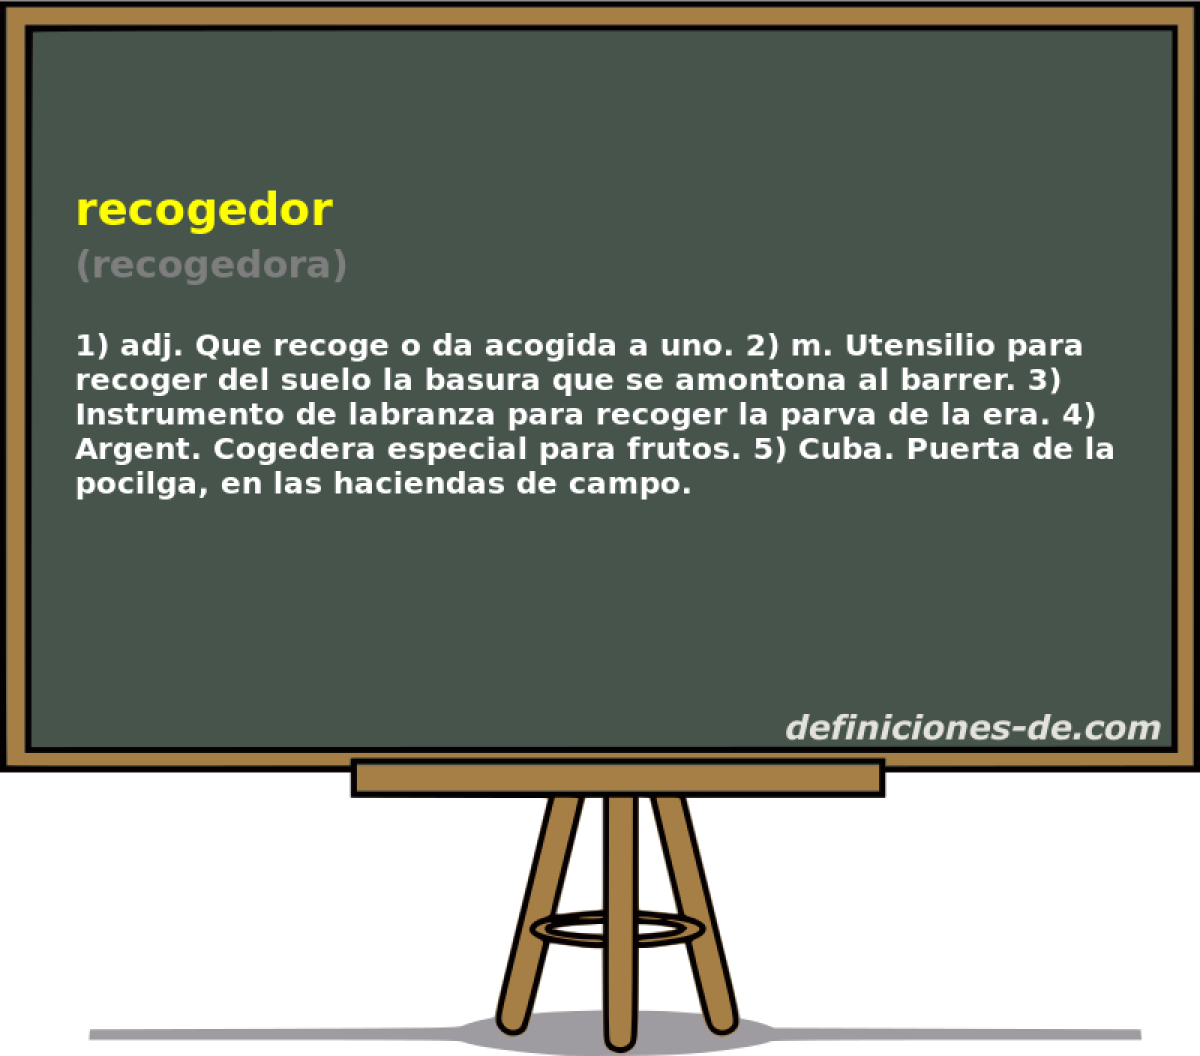 recogedor (recogedora)